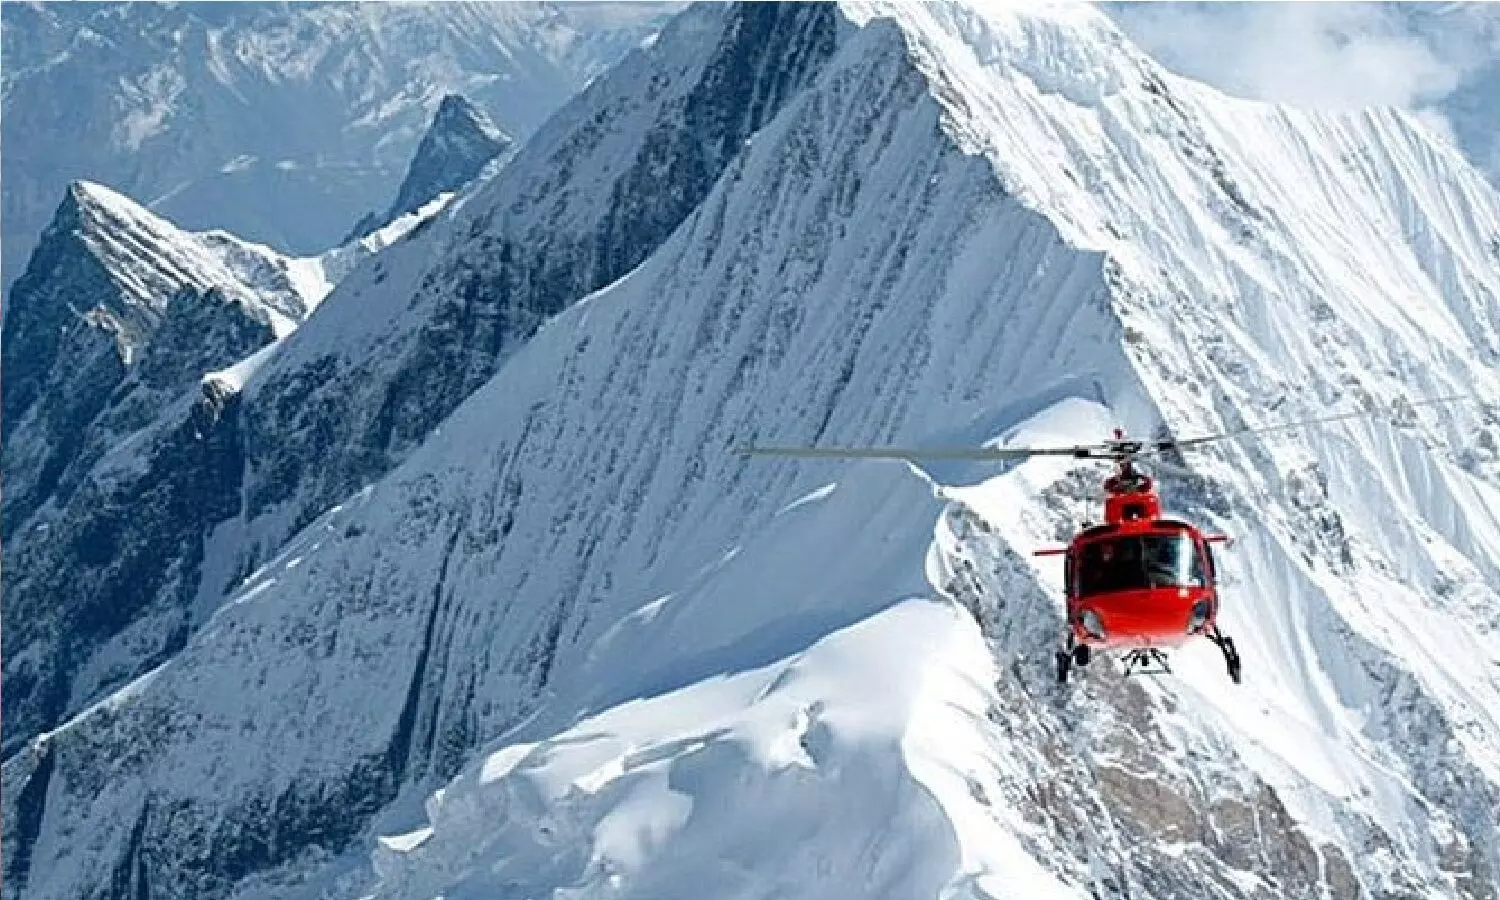 नेपाल में हेलीकॉप्टर क्रैश! पायलट समेत 6 लोगों की मौत, काठमांडू के लिए जा रहा था, माउन्ट एवरेस्ट के पास सम्पर्क टूट गया